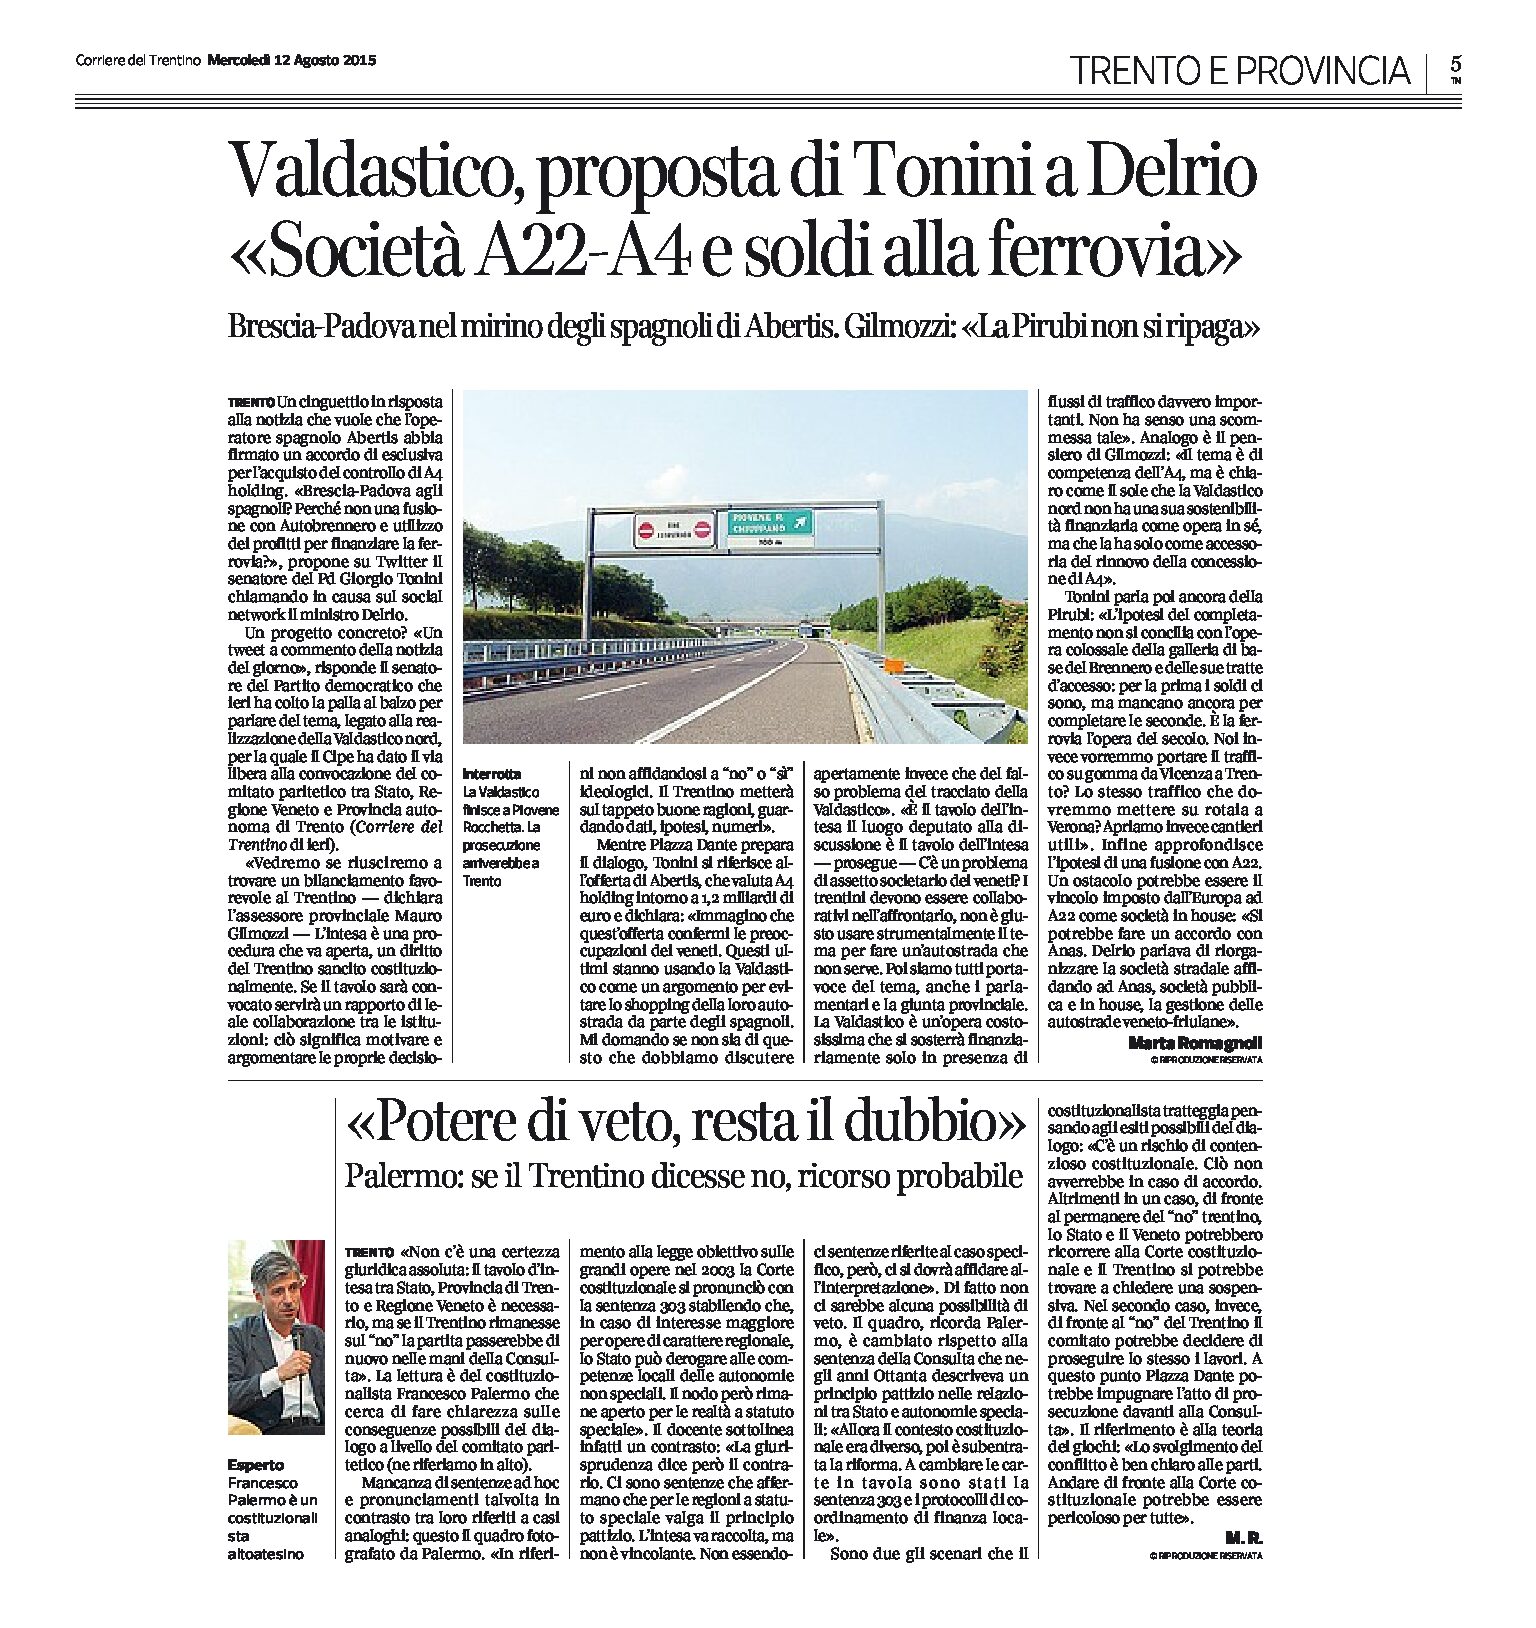 Valdastico: la proposta di Tonini e il dubbio del costituzionalista Palermo sul potere di veto